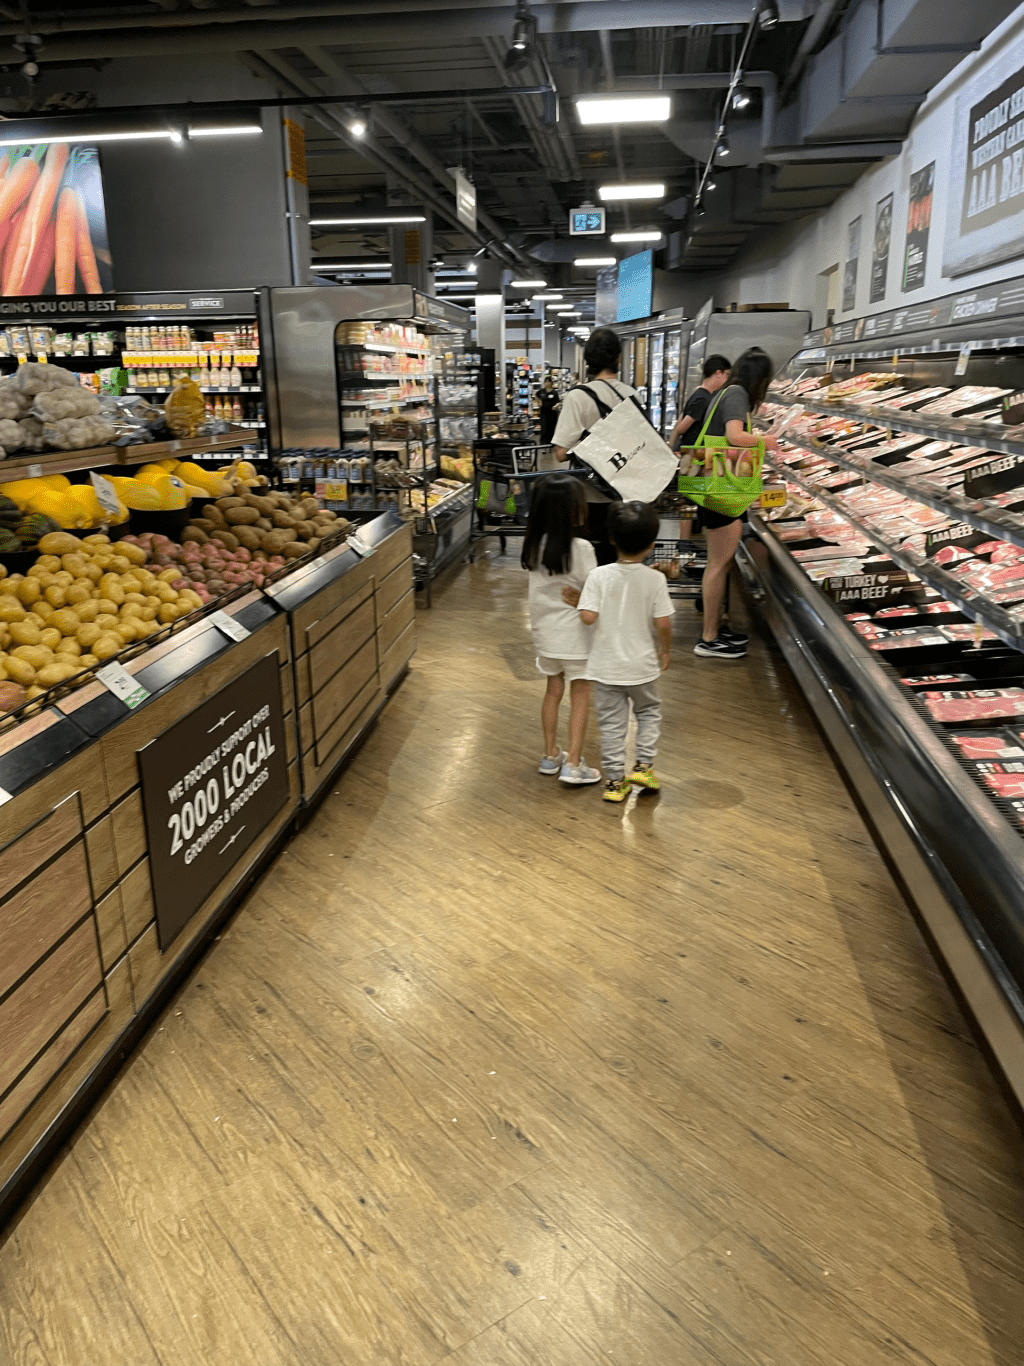 锺嘉欣月初老公被拍到带住两个小朋友去超市购物。